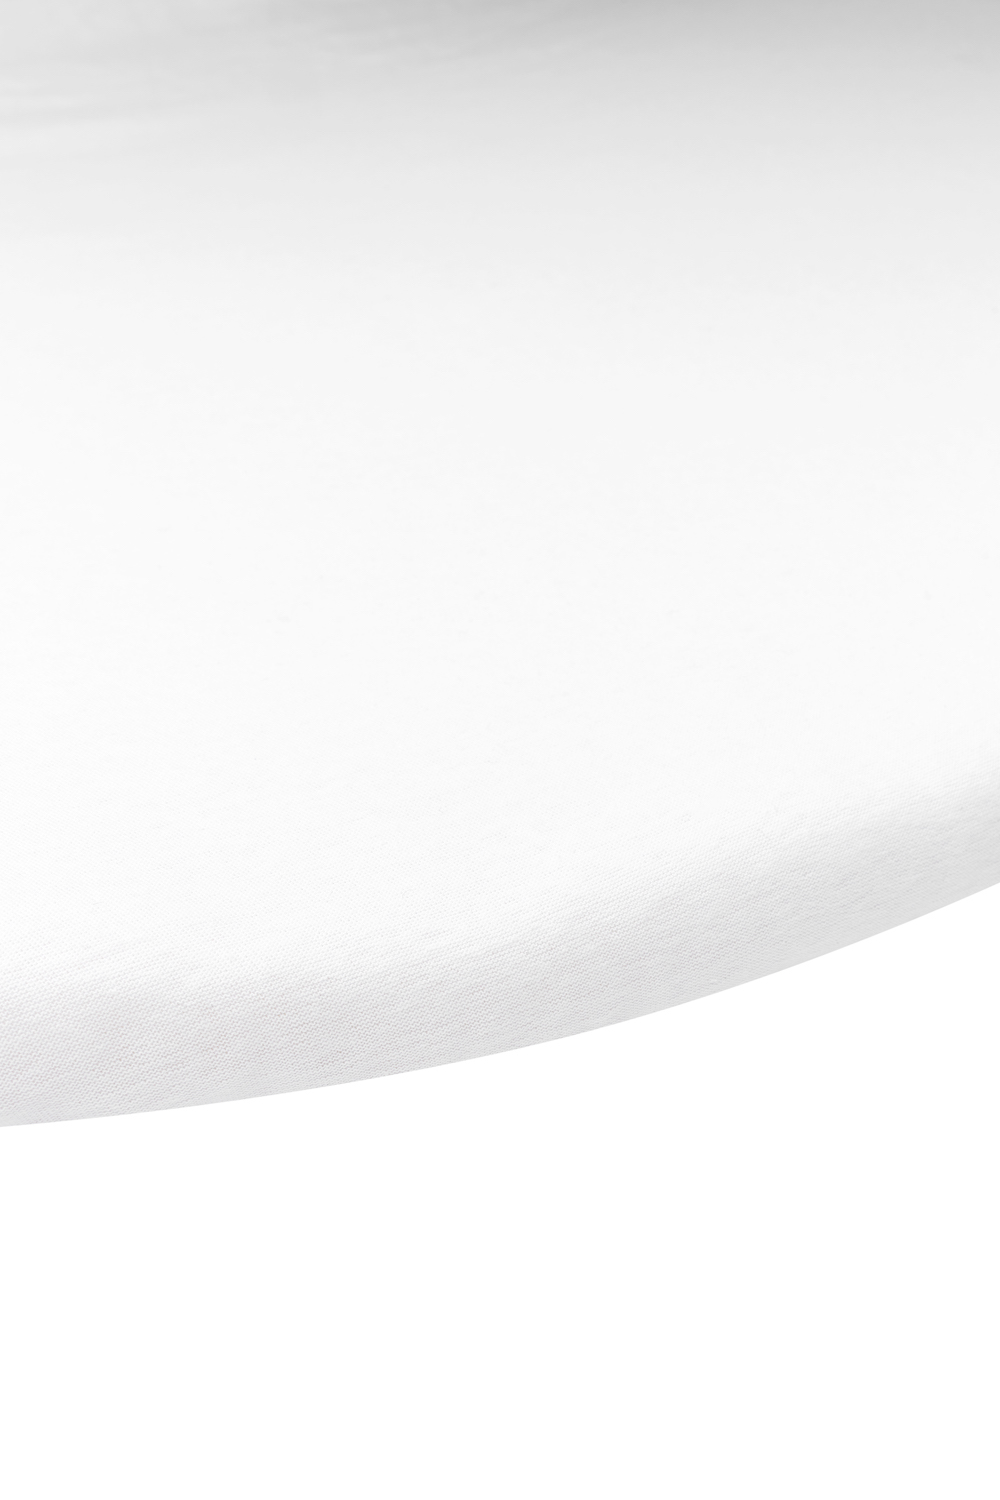 Jersey Fitted Sheet Playpen Mattress Round - White - 90/95cm